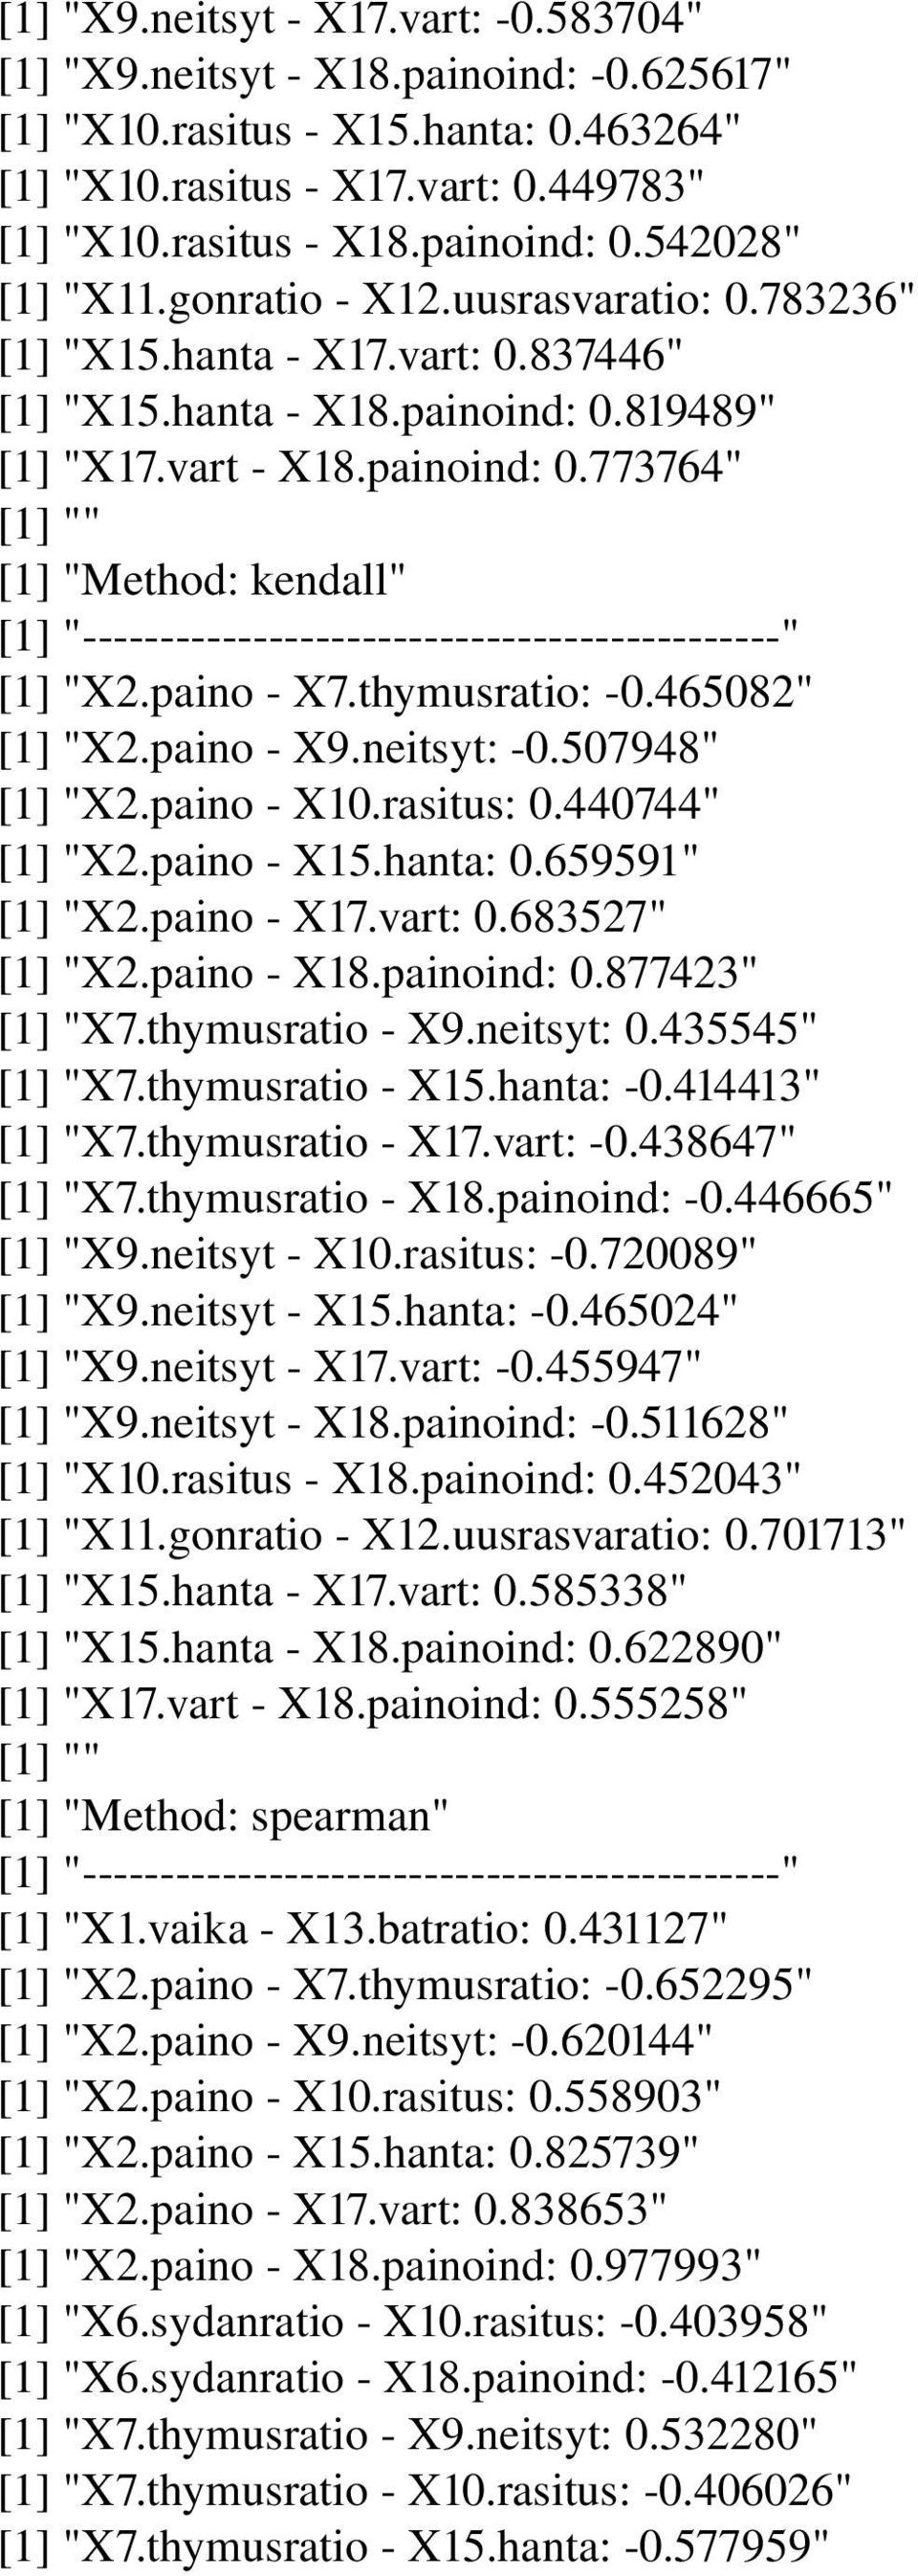 paino X7.thymusratio: 0.465082" [1] "X2.paino X9.neitsyt: 0.507948" [1] "X2.paino X10.rasitus: 0.440744" [1] "X2.paino X15.hanta: 0.659591" [1] "X2.paino X17.vart: 0.683527" [1] "X2.paino X18.